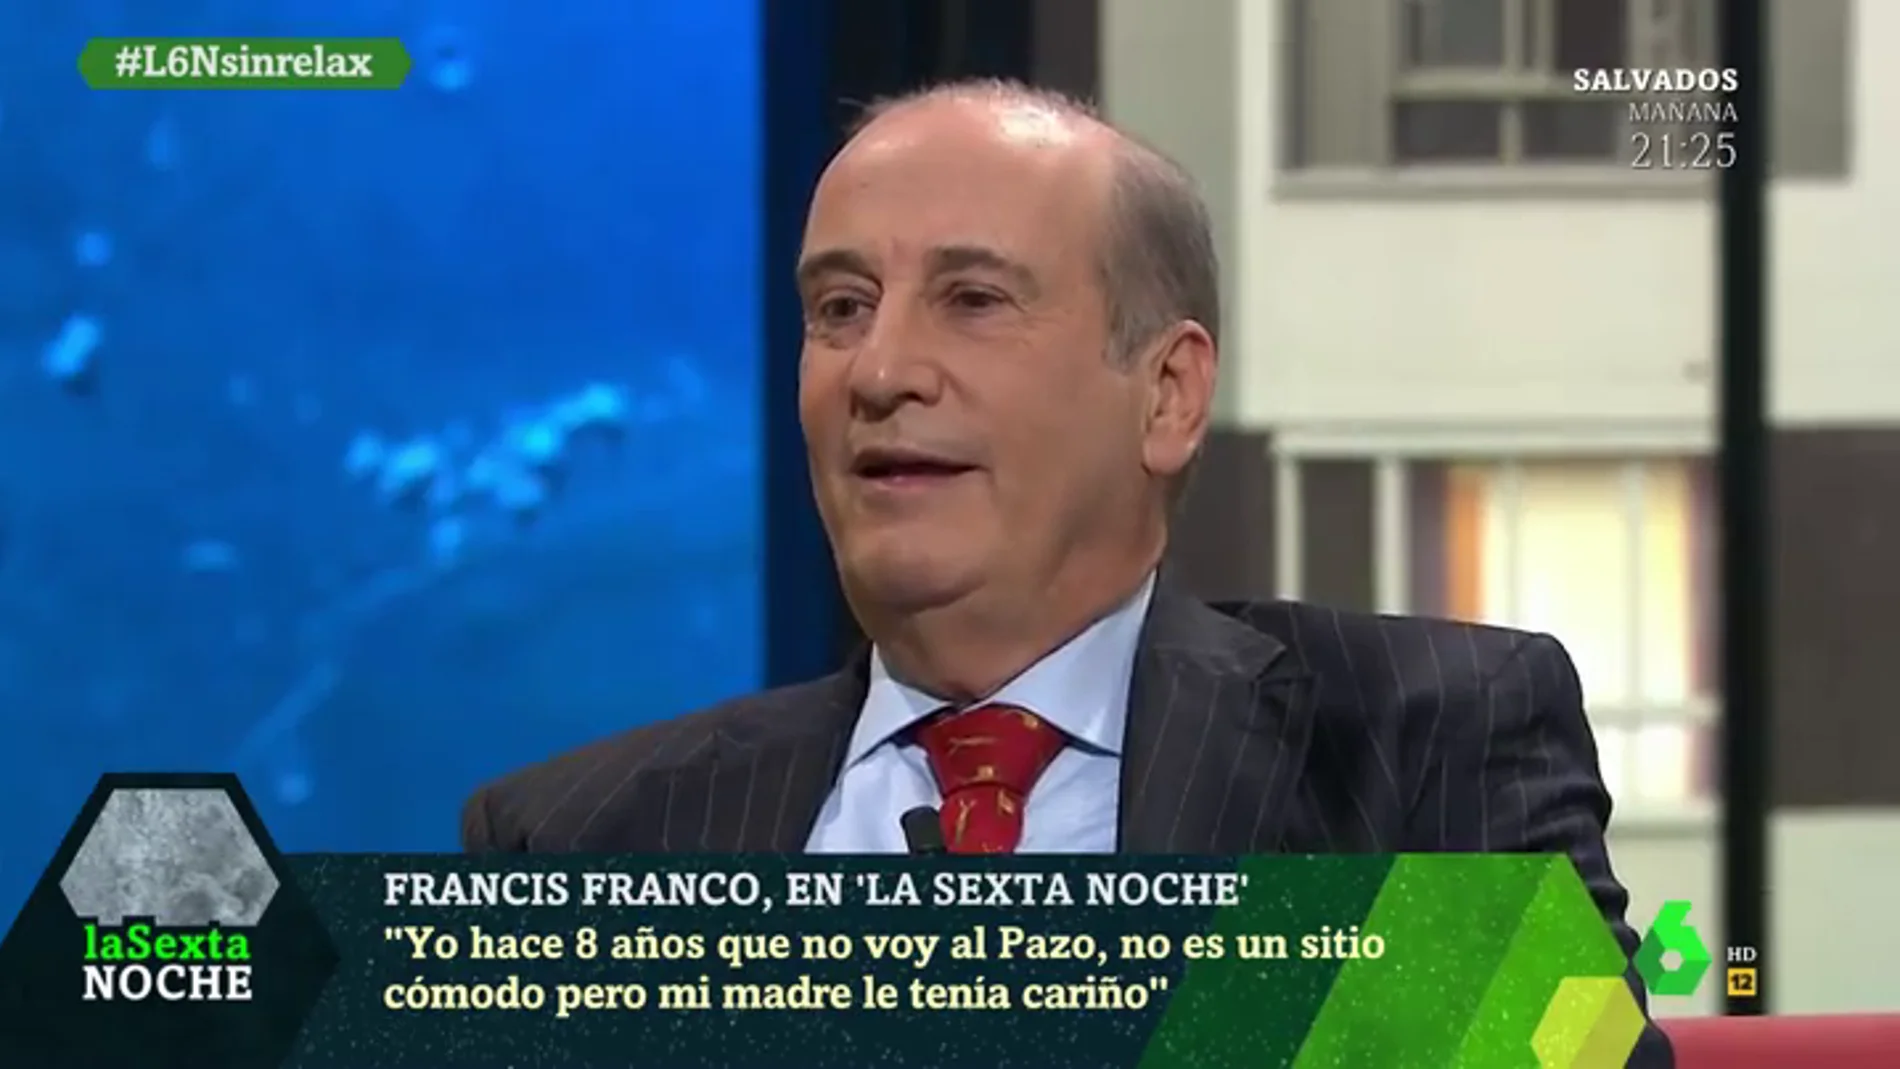 Francis Franco: "Estamos en un gobierno comunista y aquí todo va en contra de la propiedad privada"